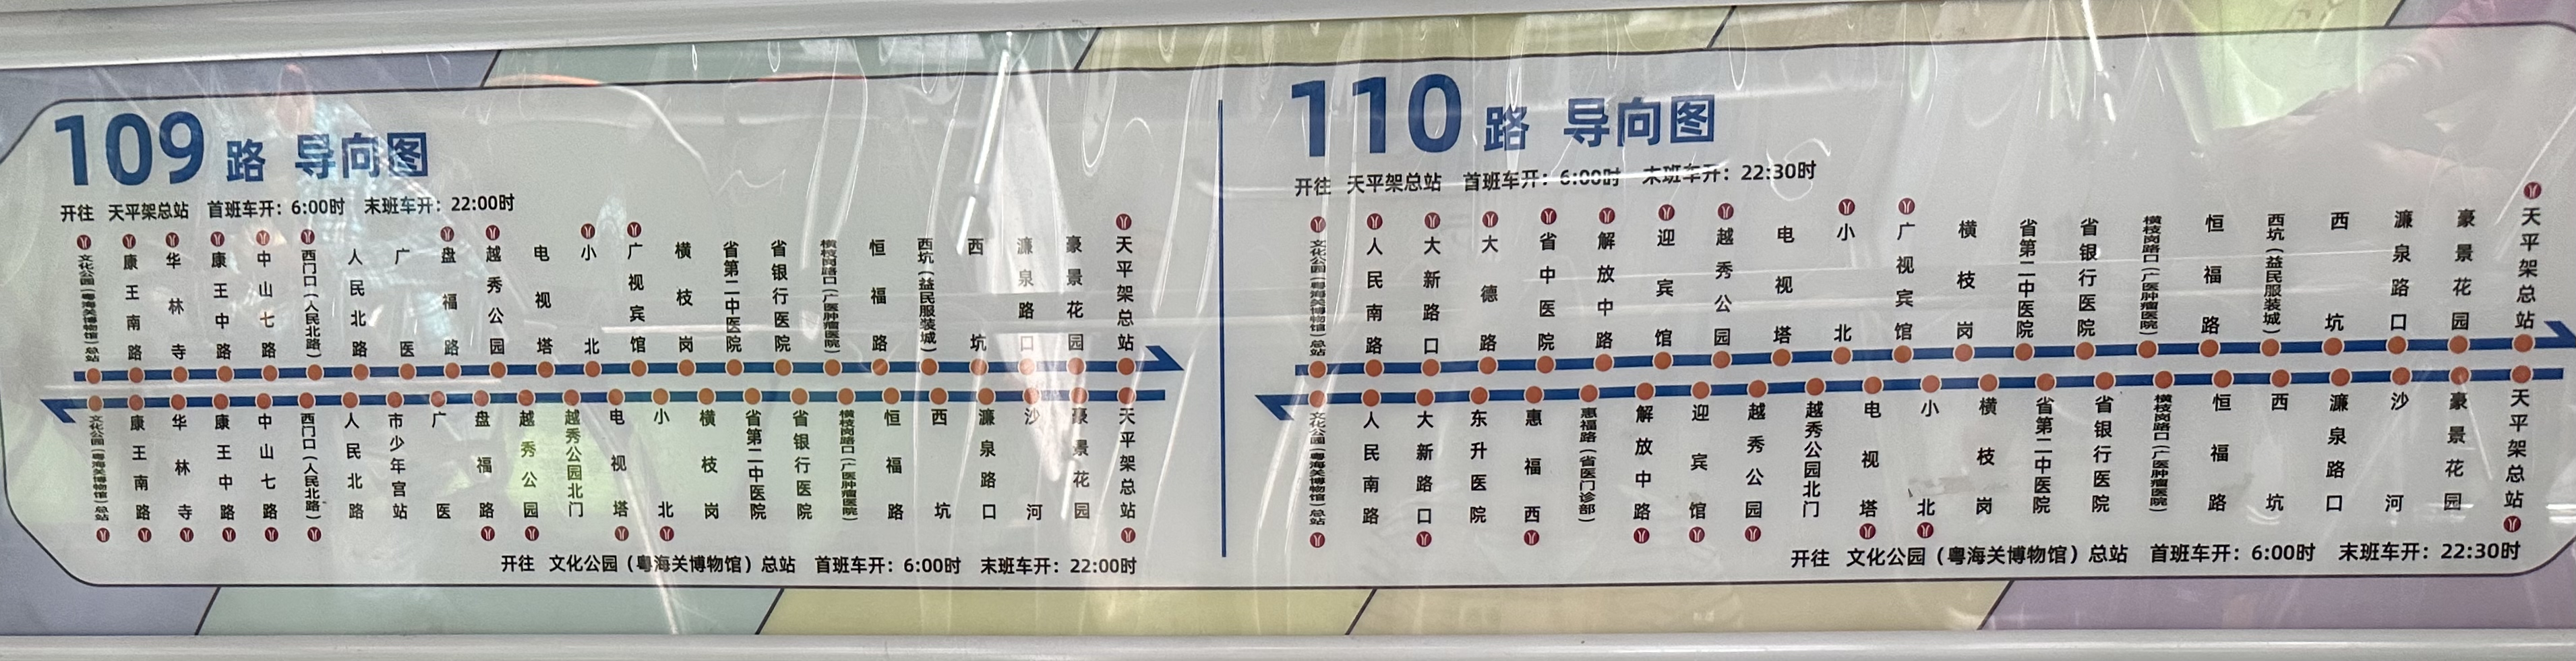 广州110路公交车路线